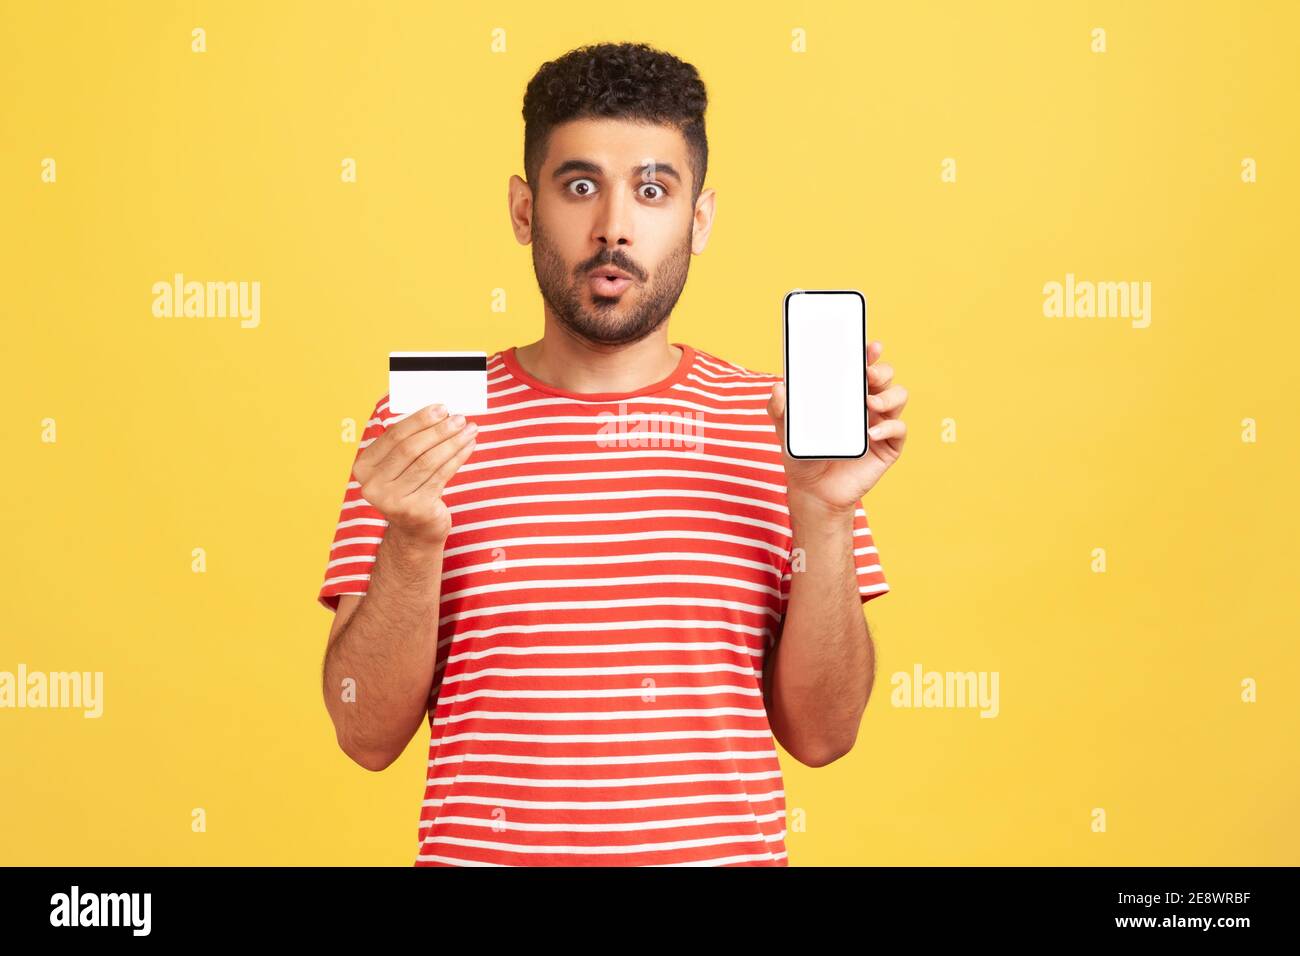 Un homme excité choqué avec une barbe en t-shirt rayé tenant une carte de crédit et un smartphone, regardant l'appareil photo avec de grands yeux, surpris par la facilité de banque. Po Banque D'Images